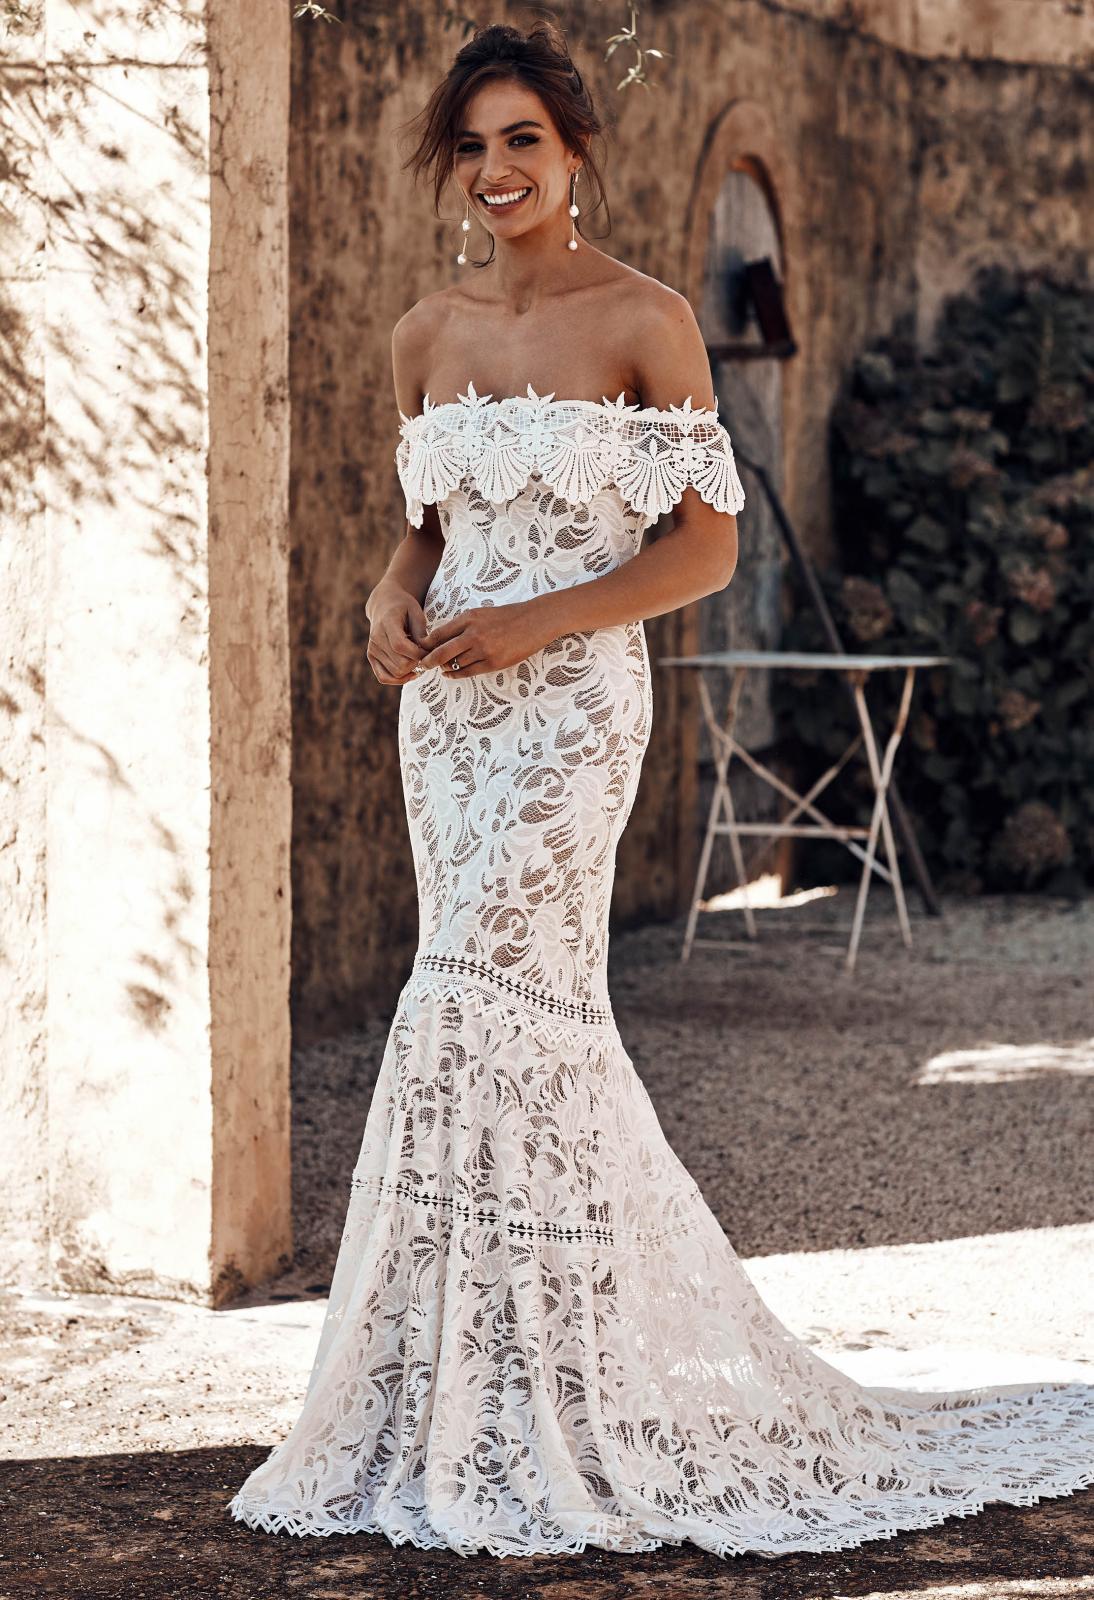 Cien-Wedding-Dress-by-Grace-Loves-Lace-1600-x-1067--1094x1600.jpg